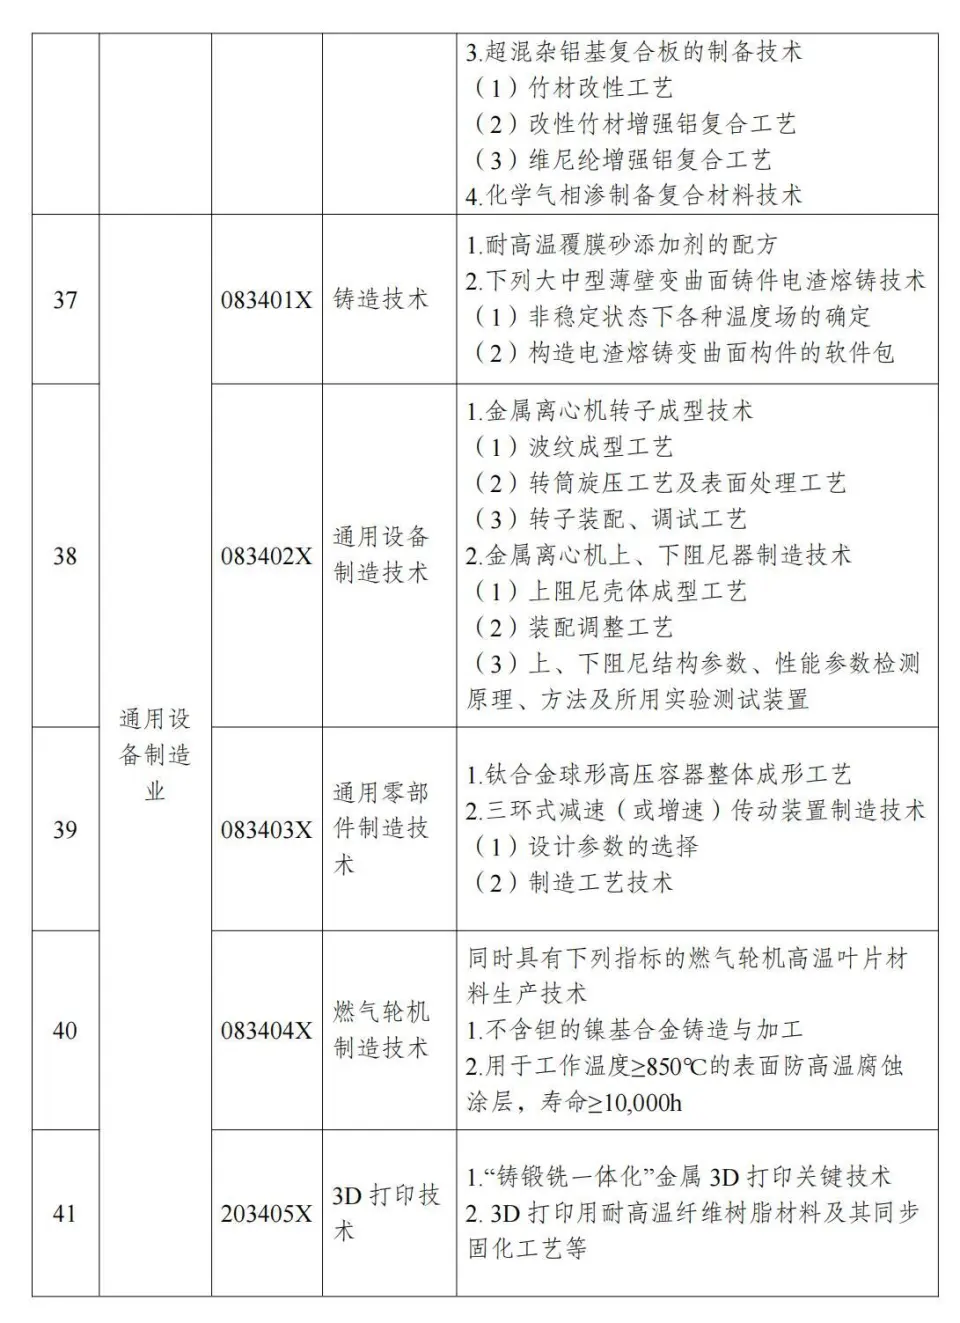 两部分公布《中国制止出口限制出口技术目录》 第12张图片